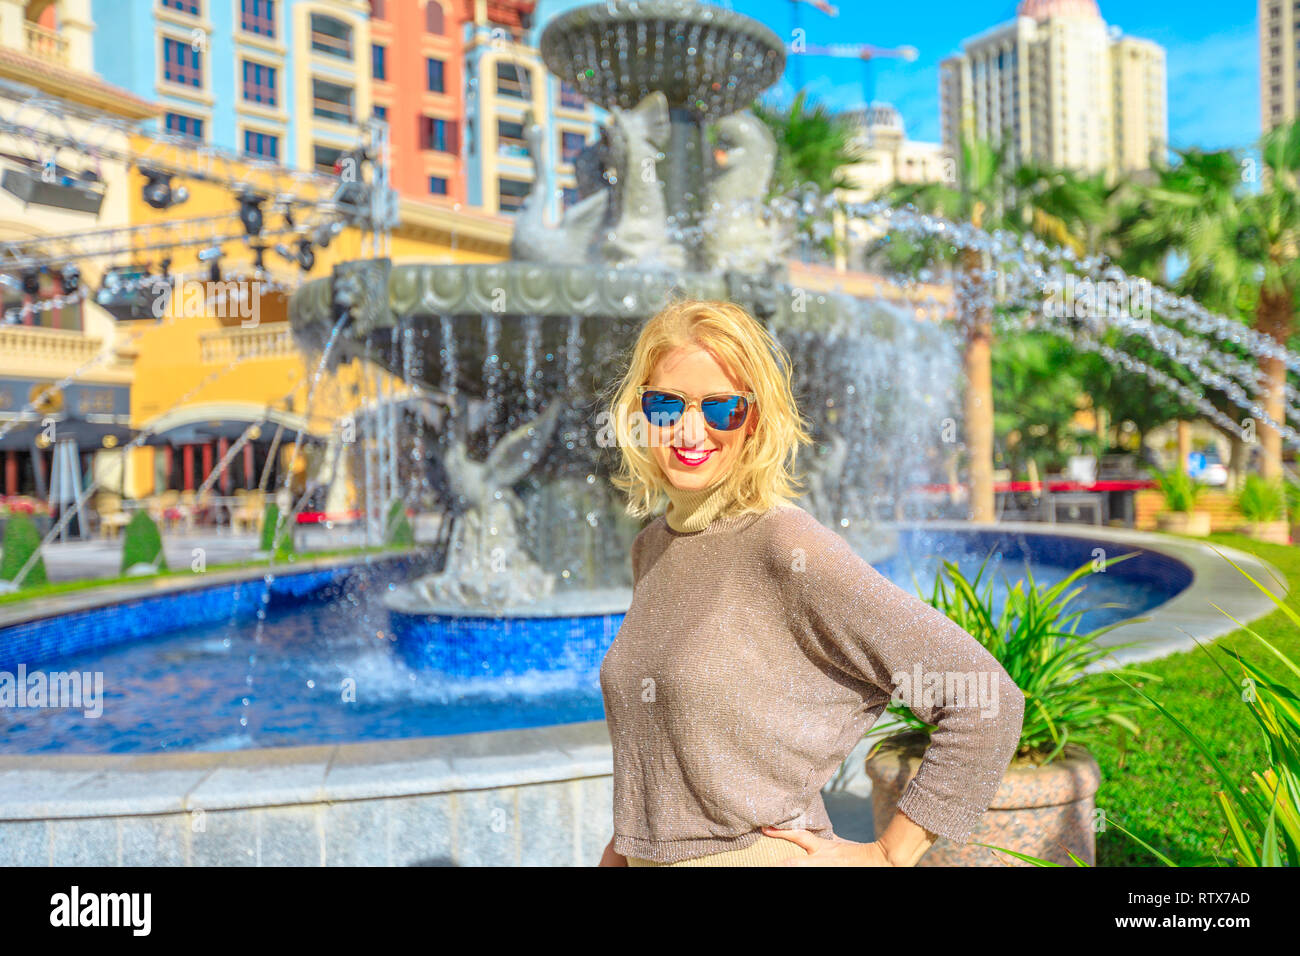 Happy blonde femme fontaine d'eau dans le centre bénéficie de Médina, un quartier résidentiel dans la Perle du Qatar, Doha, l'icône du golfe Persique, au Moyen-Orient Banque D'Images